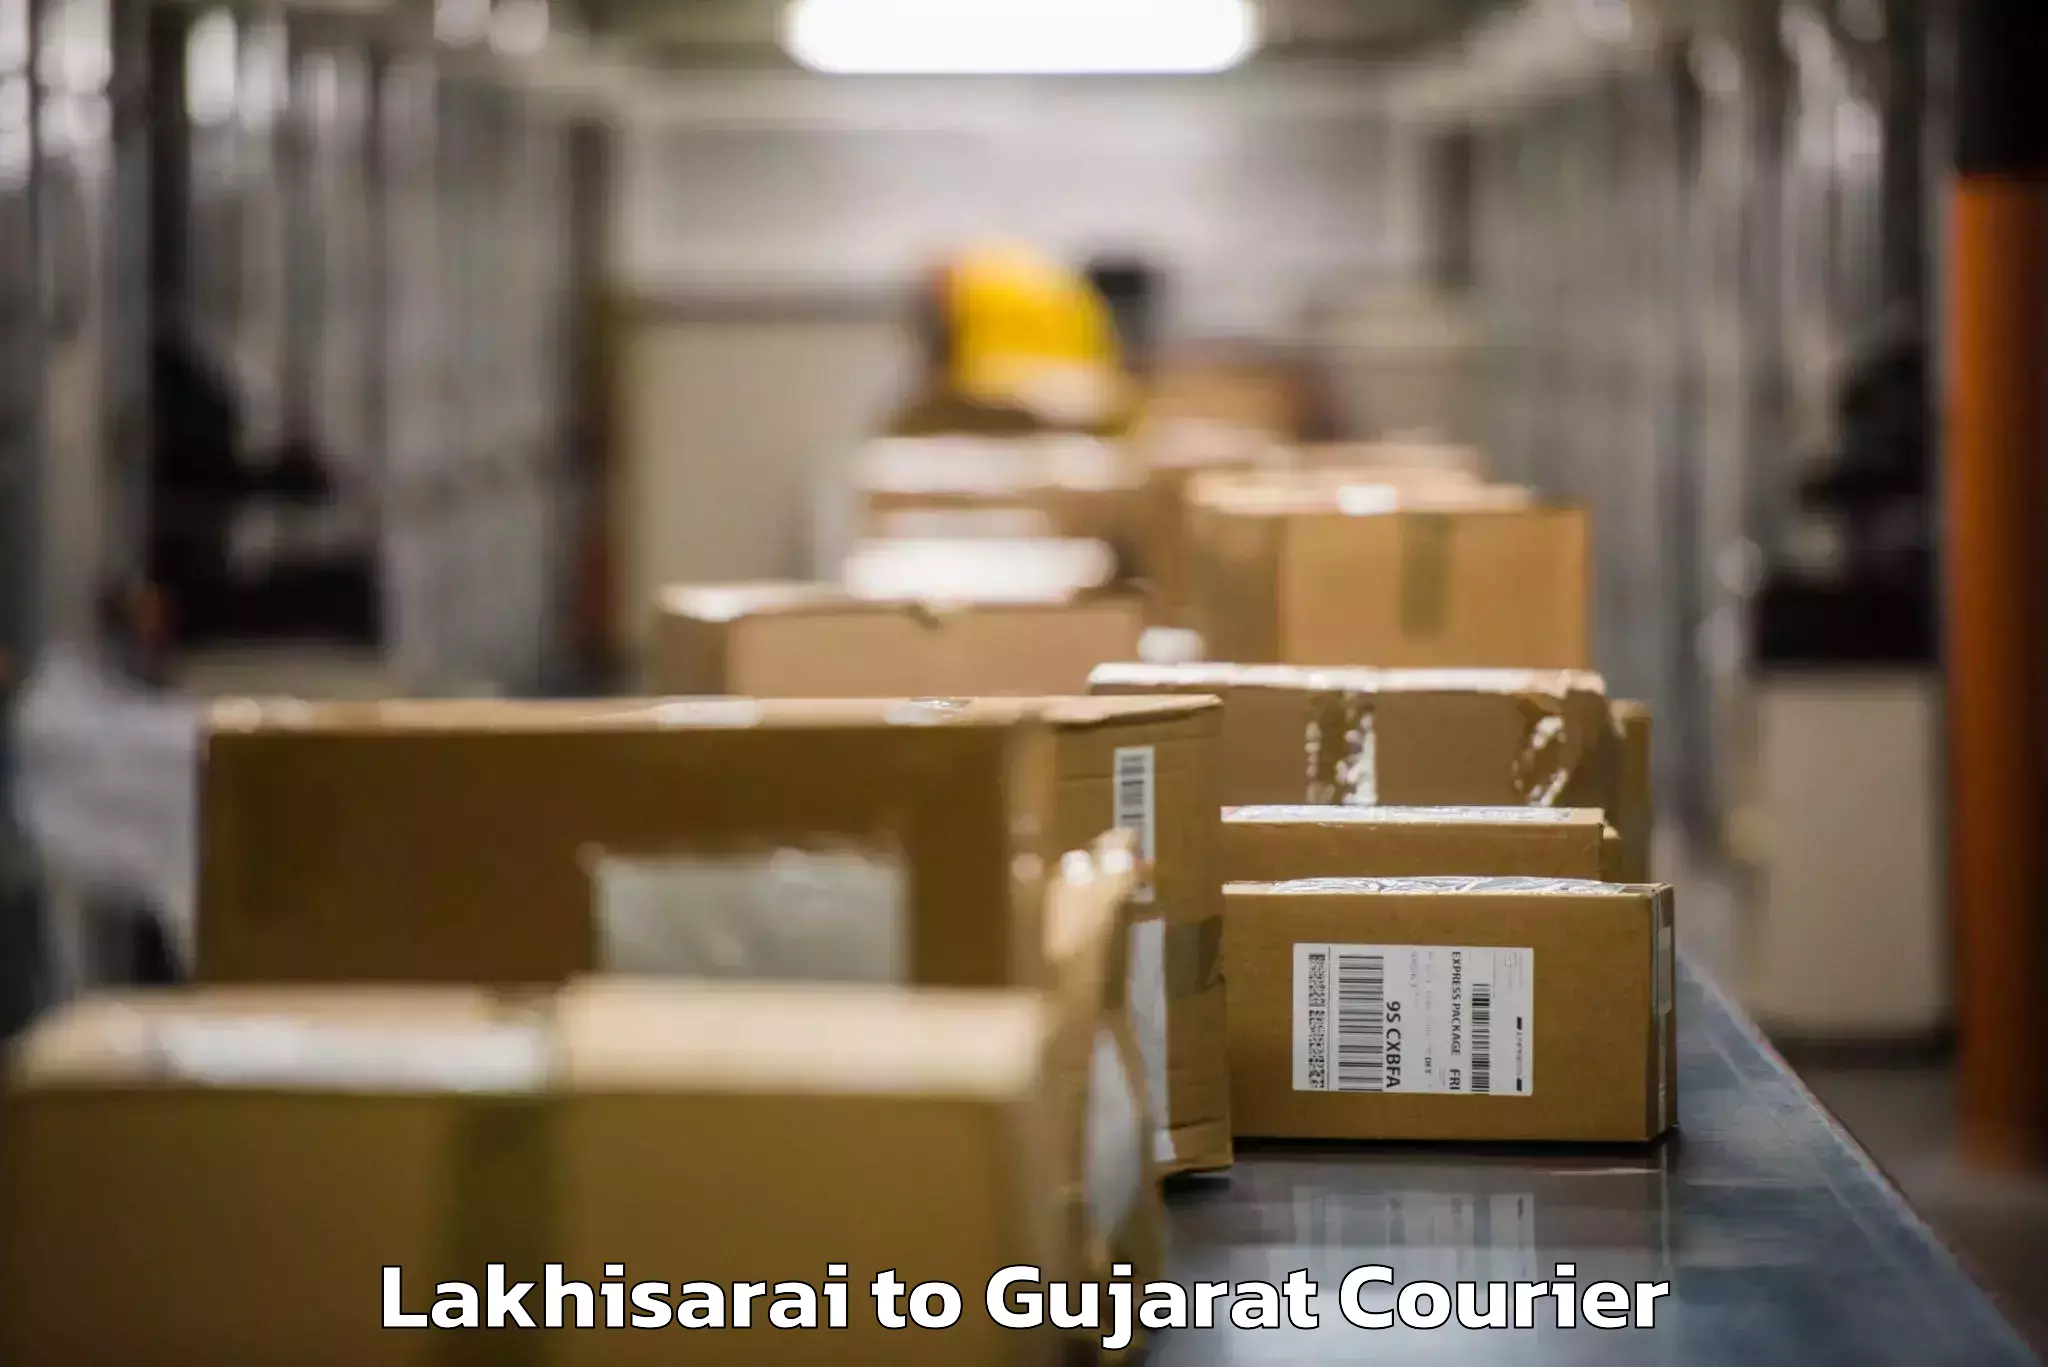 Baggage shipping schedule Lakhisarai to Dharmaram